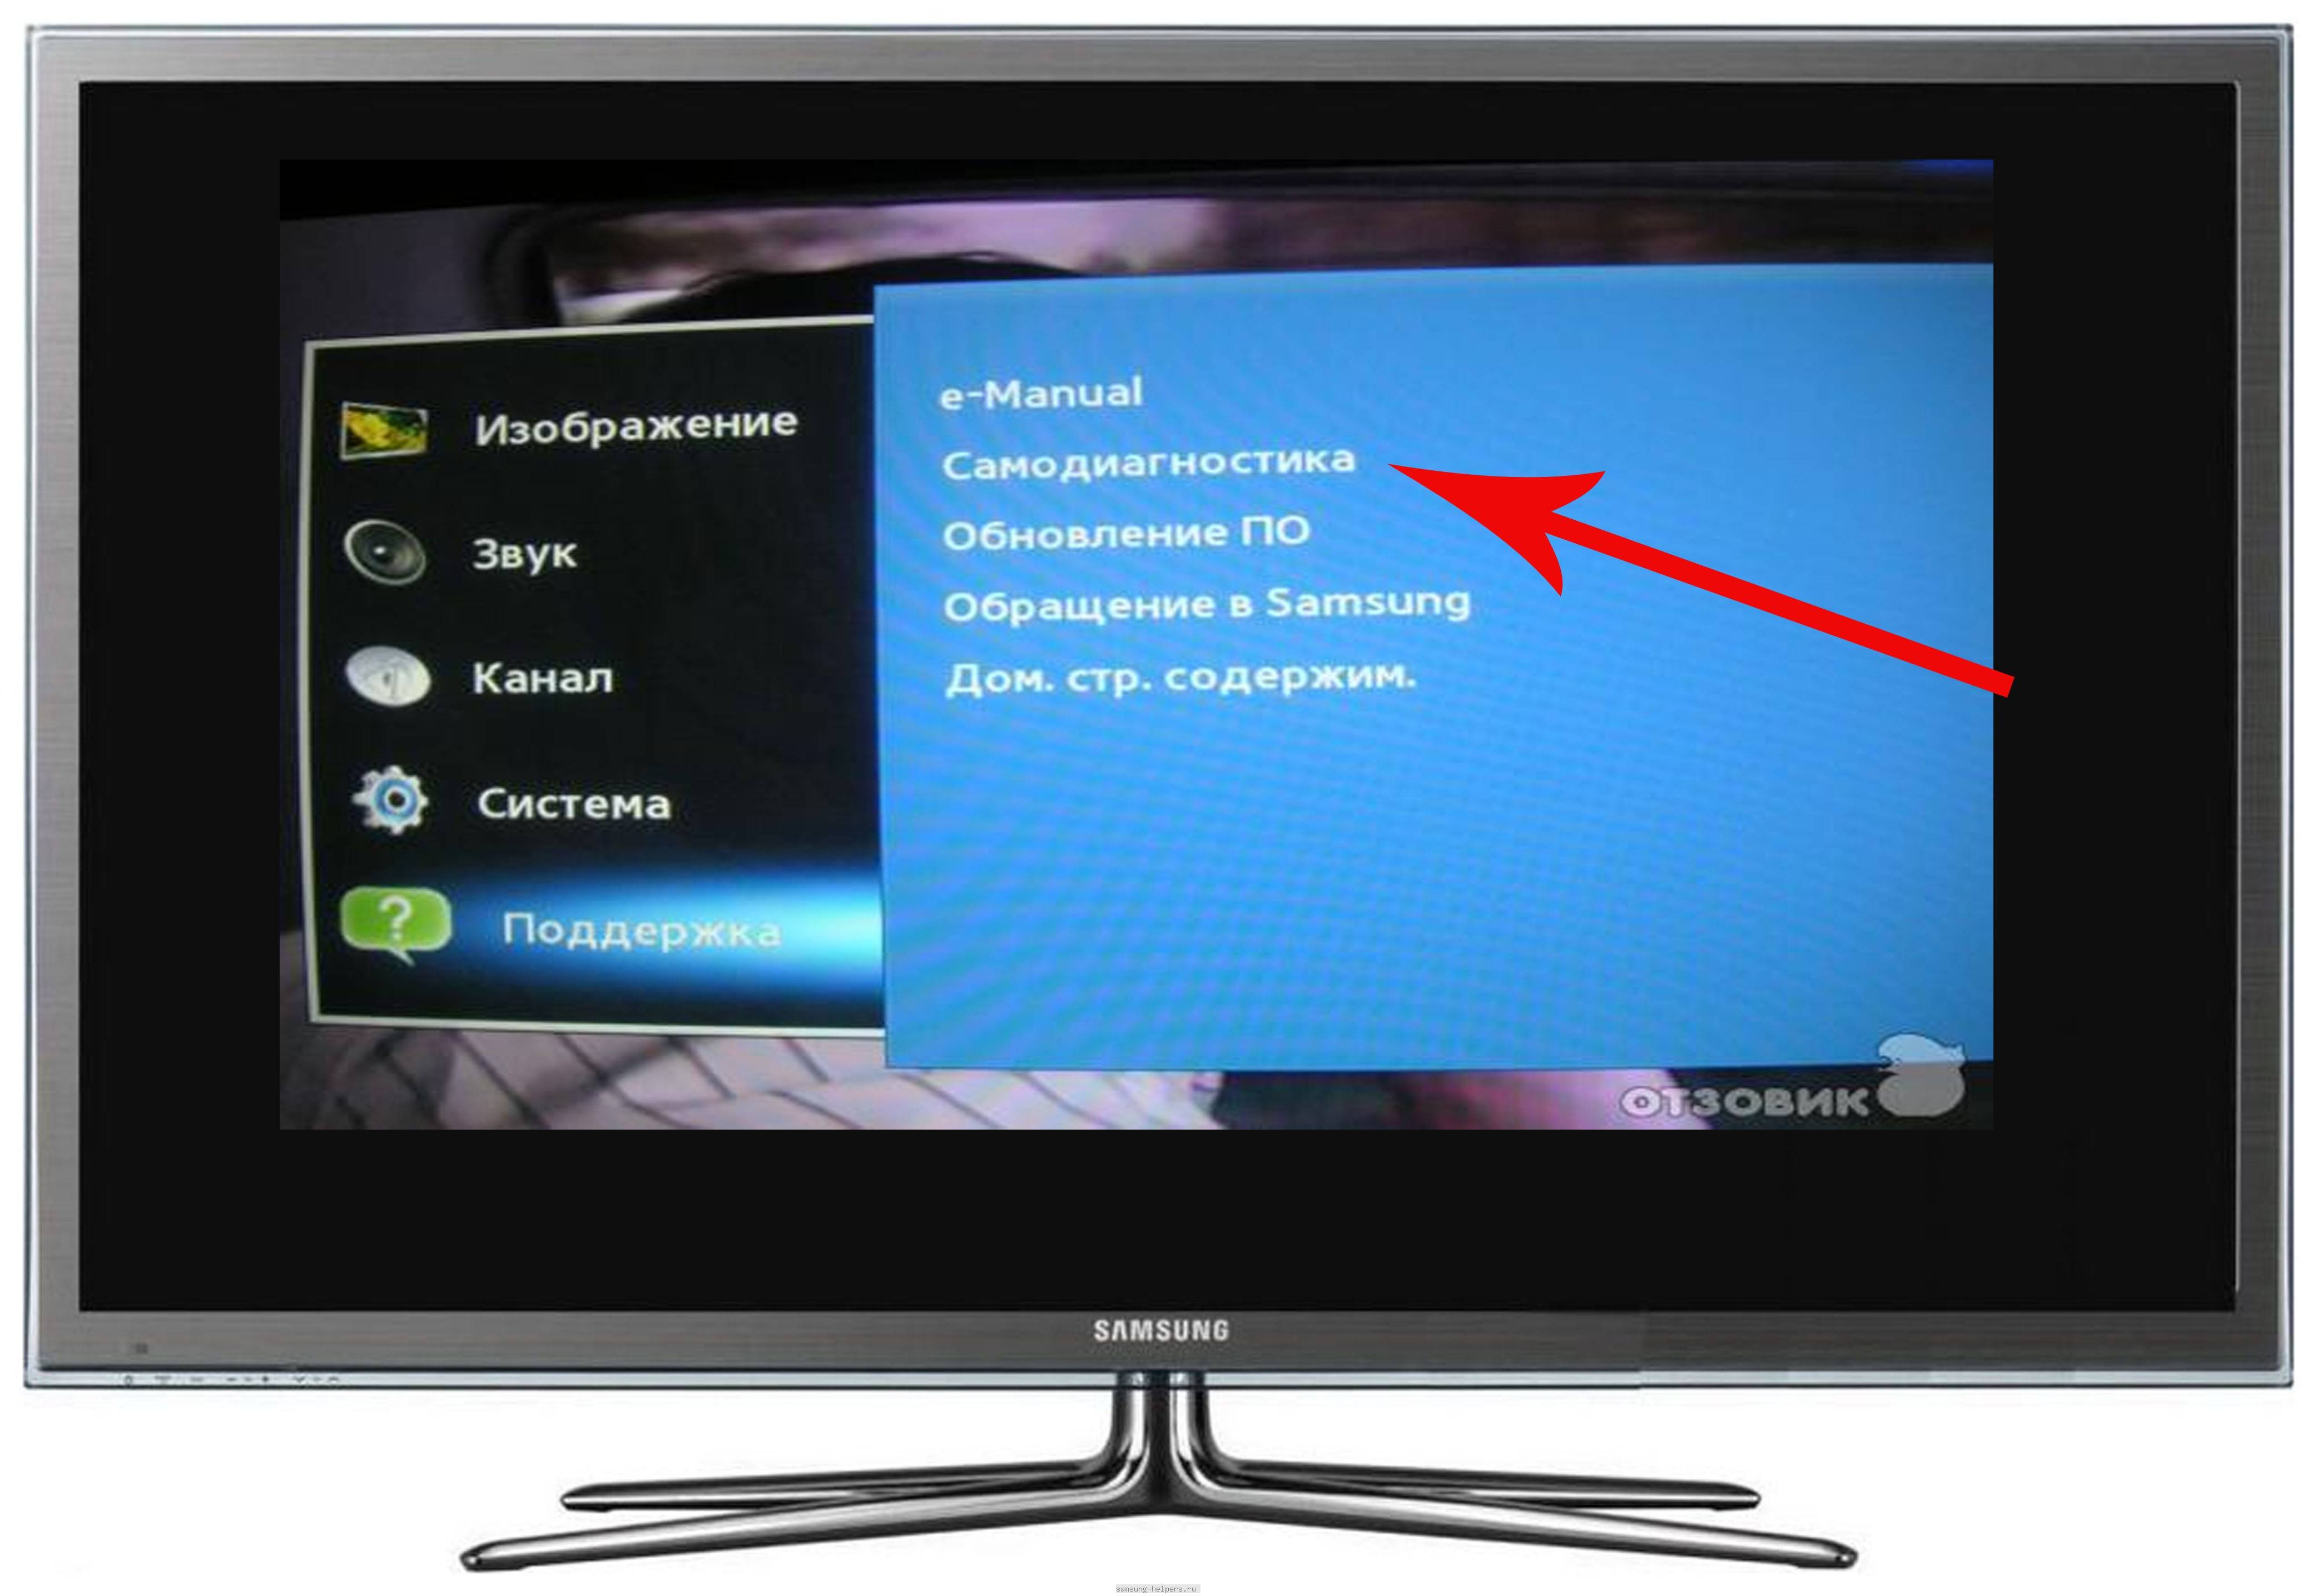 Как обновить по на телевизоре samsung smart tv через интернет и флешку